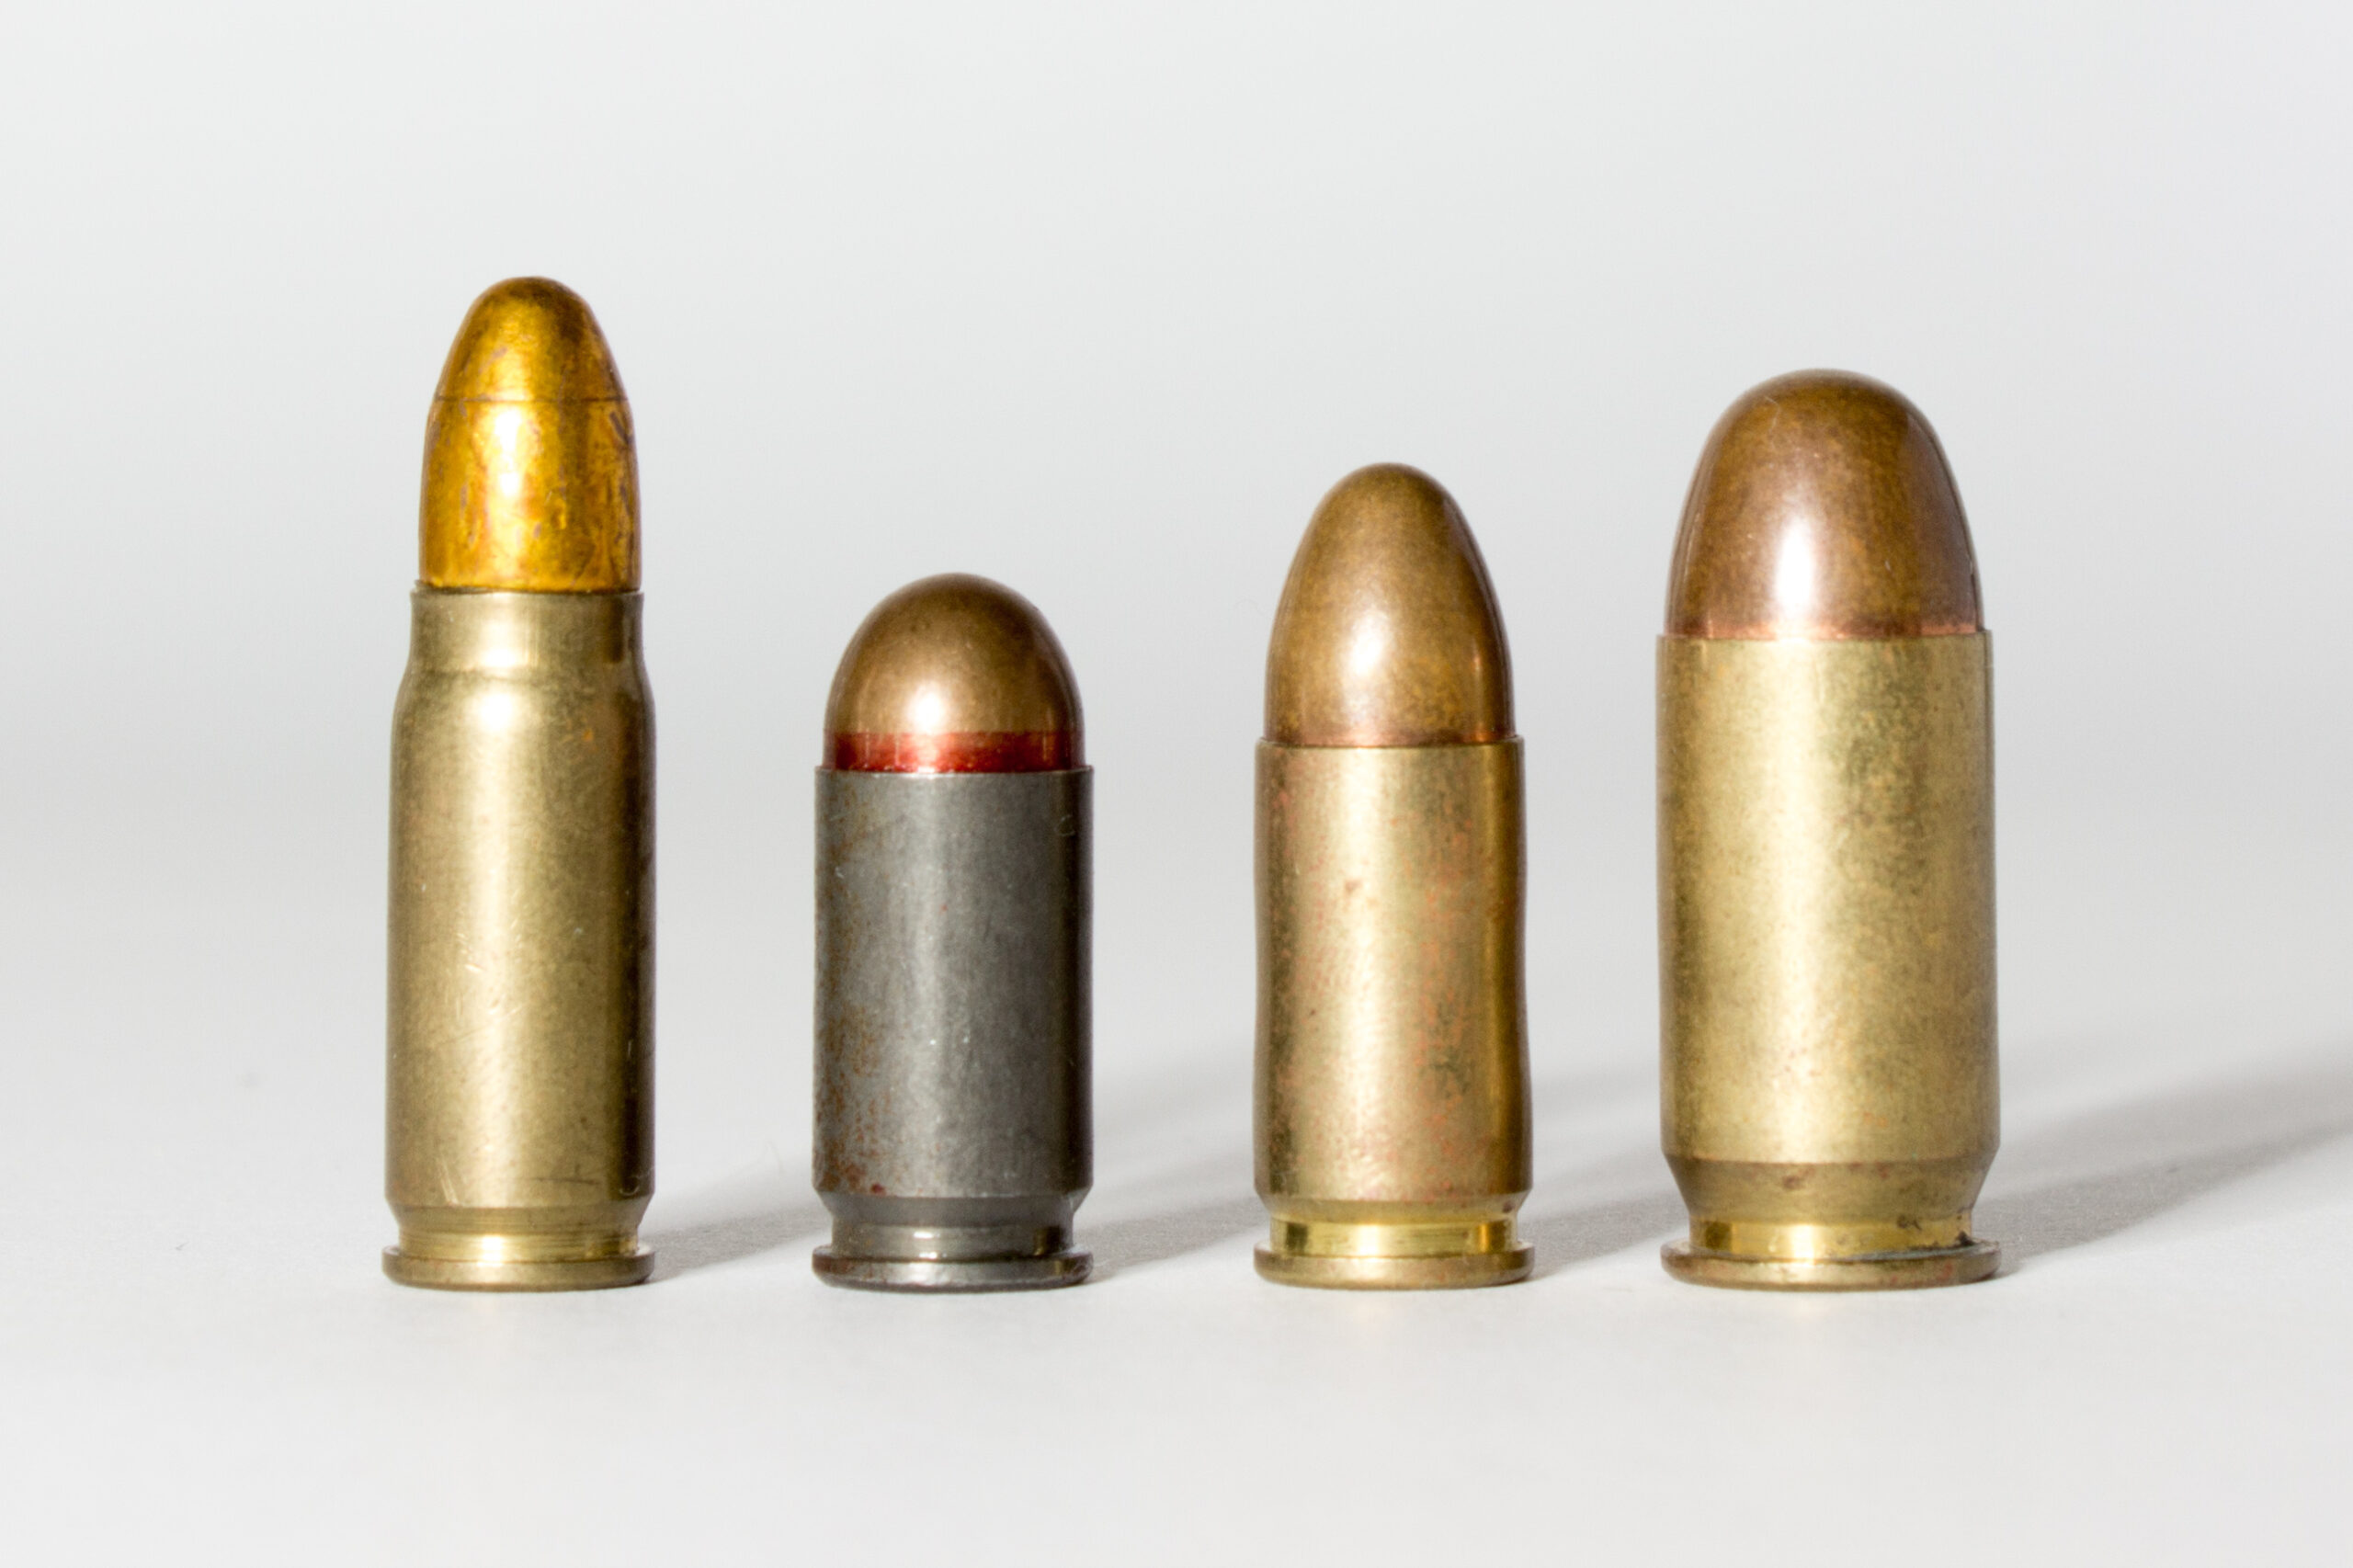 9mm vs. .45 caliber